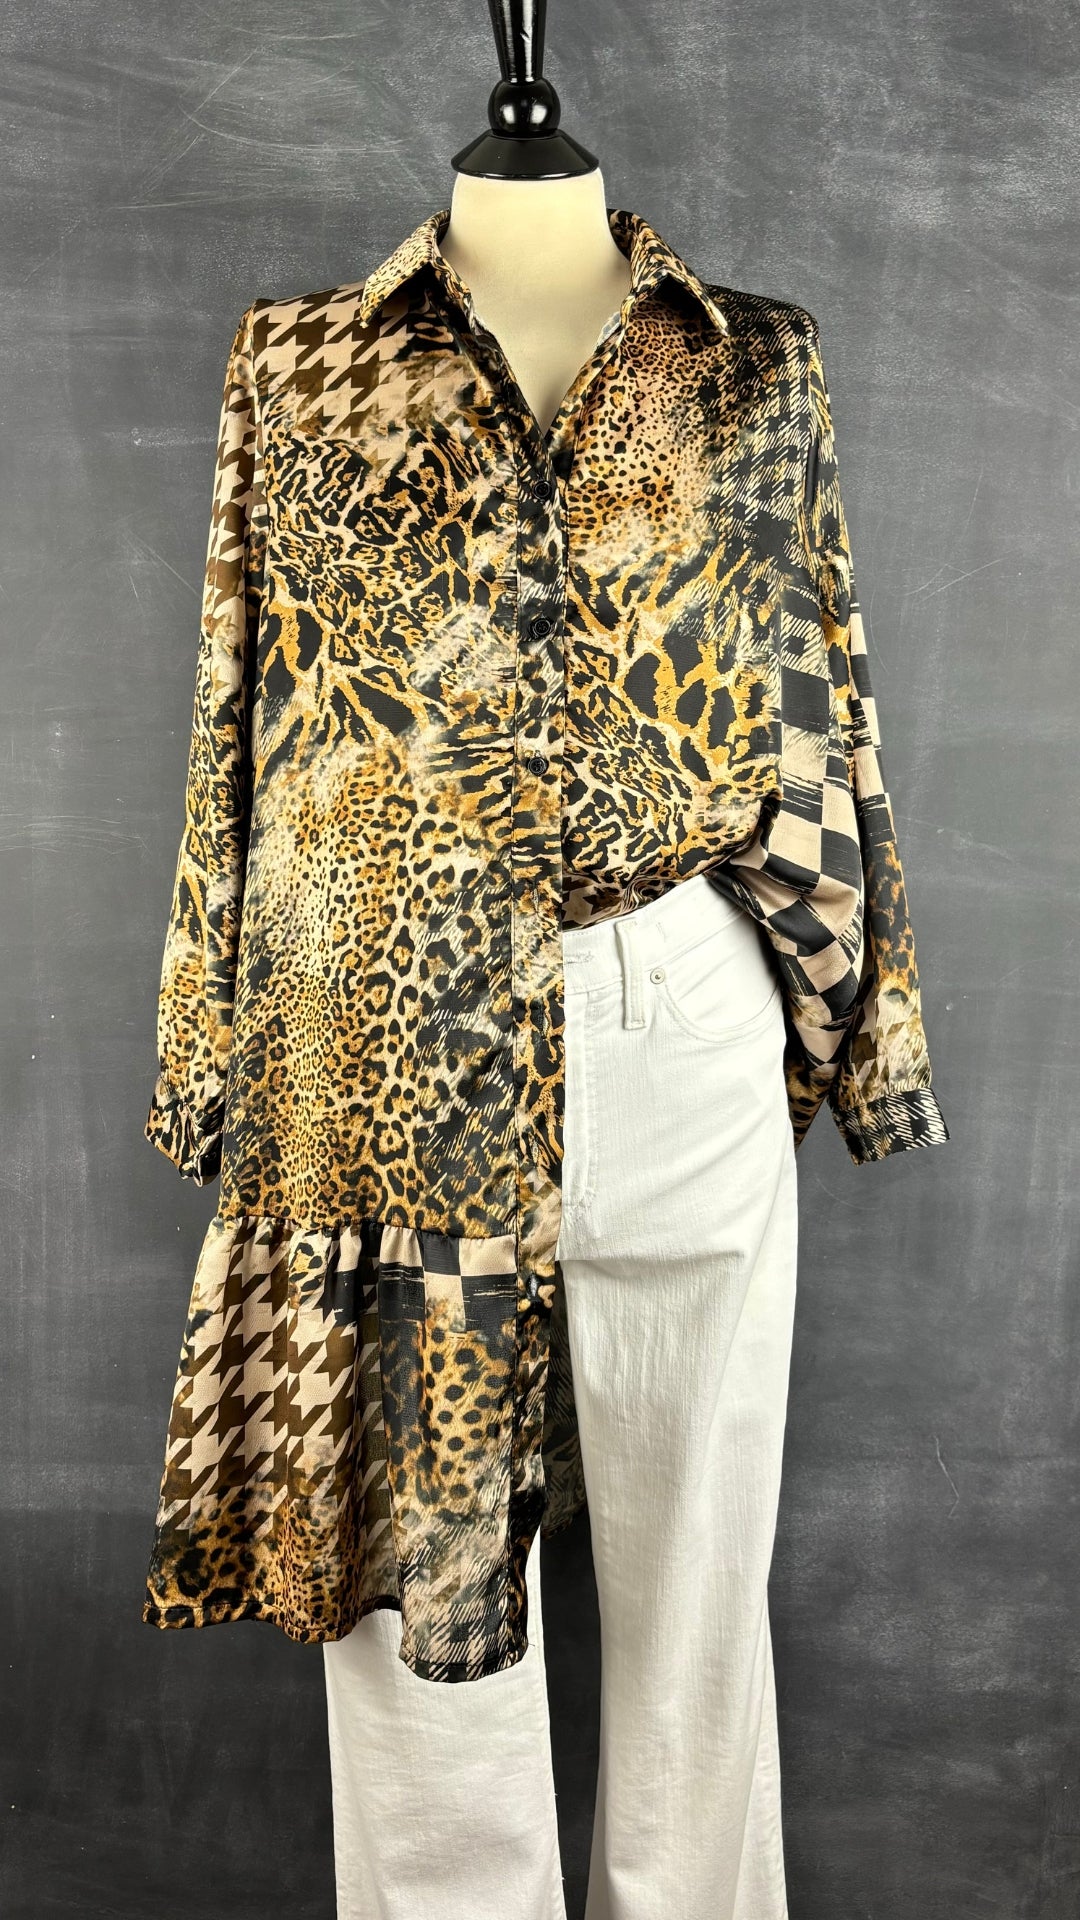 Chemisier tunique léopard Uchuu Studio, taille estimée m/l. Vue de l'agencement avec un pantalon blanc.